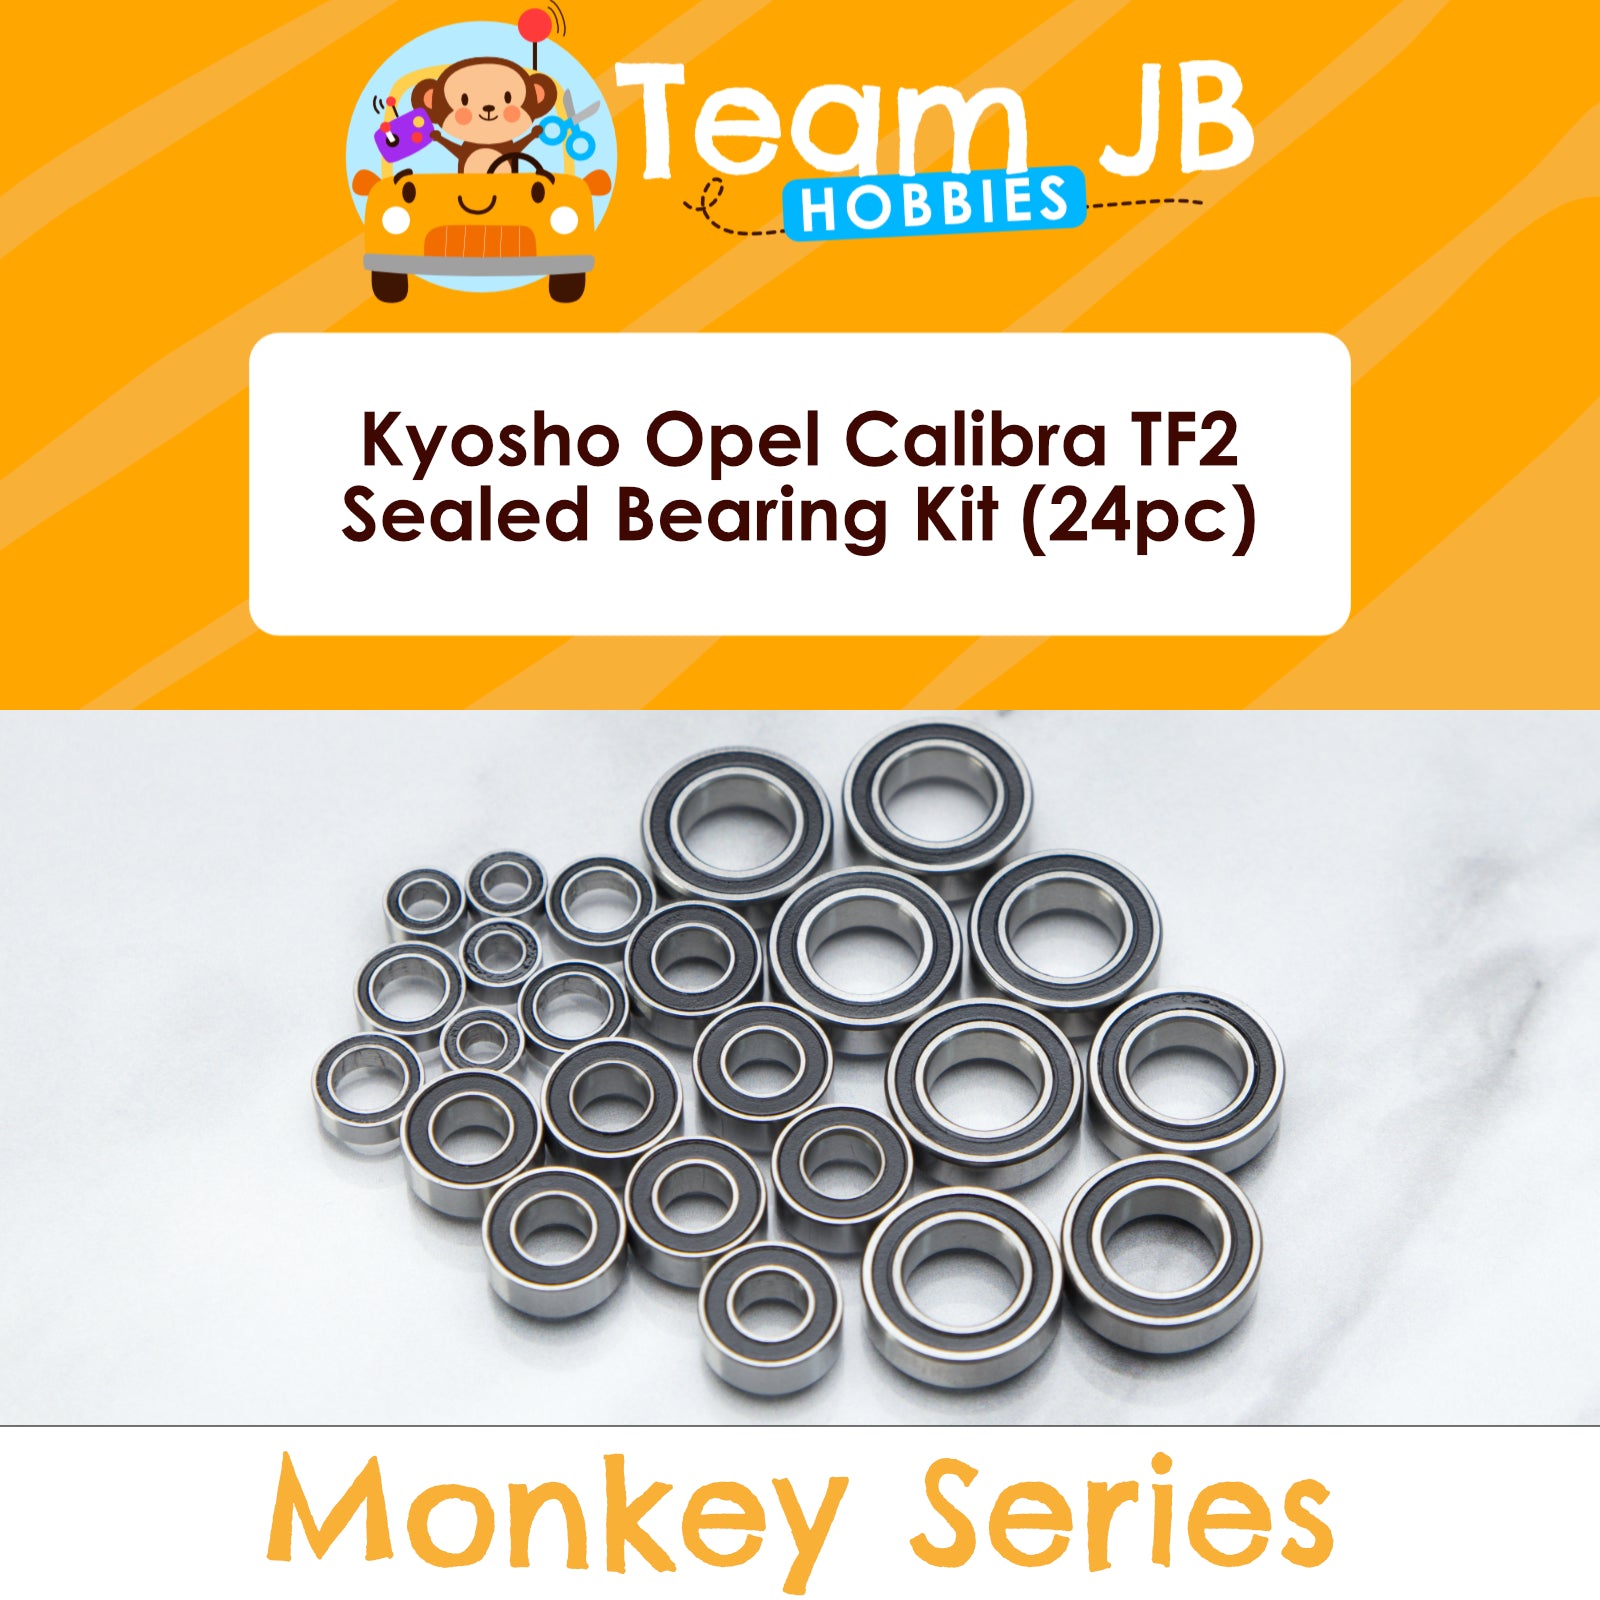 Kyosho Opel Calibra TF2 - Sealed Bearing Kit